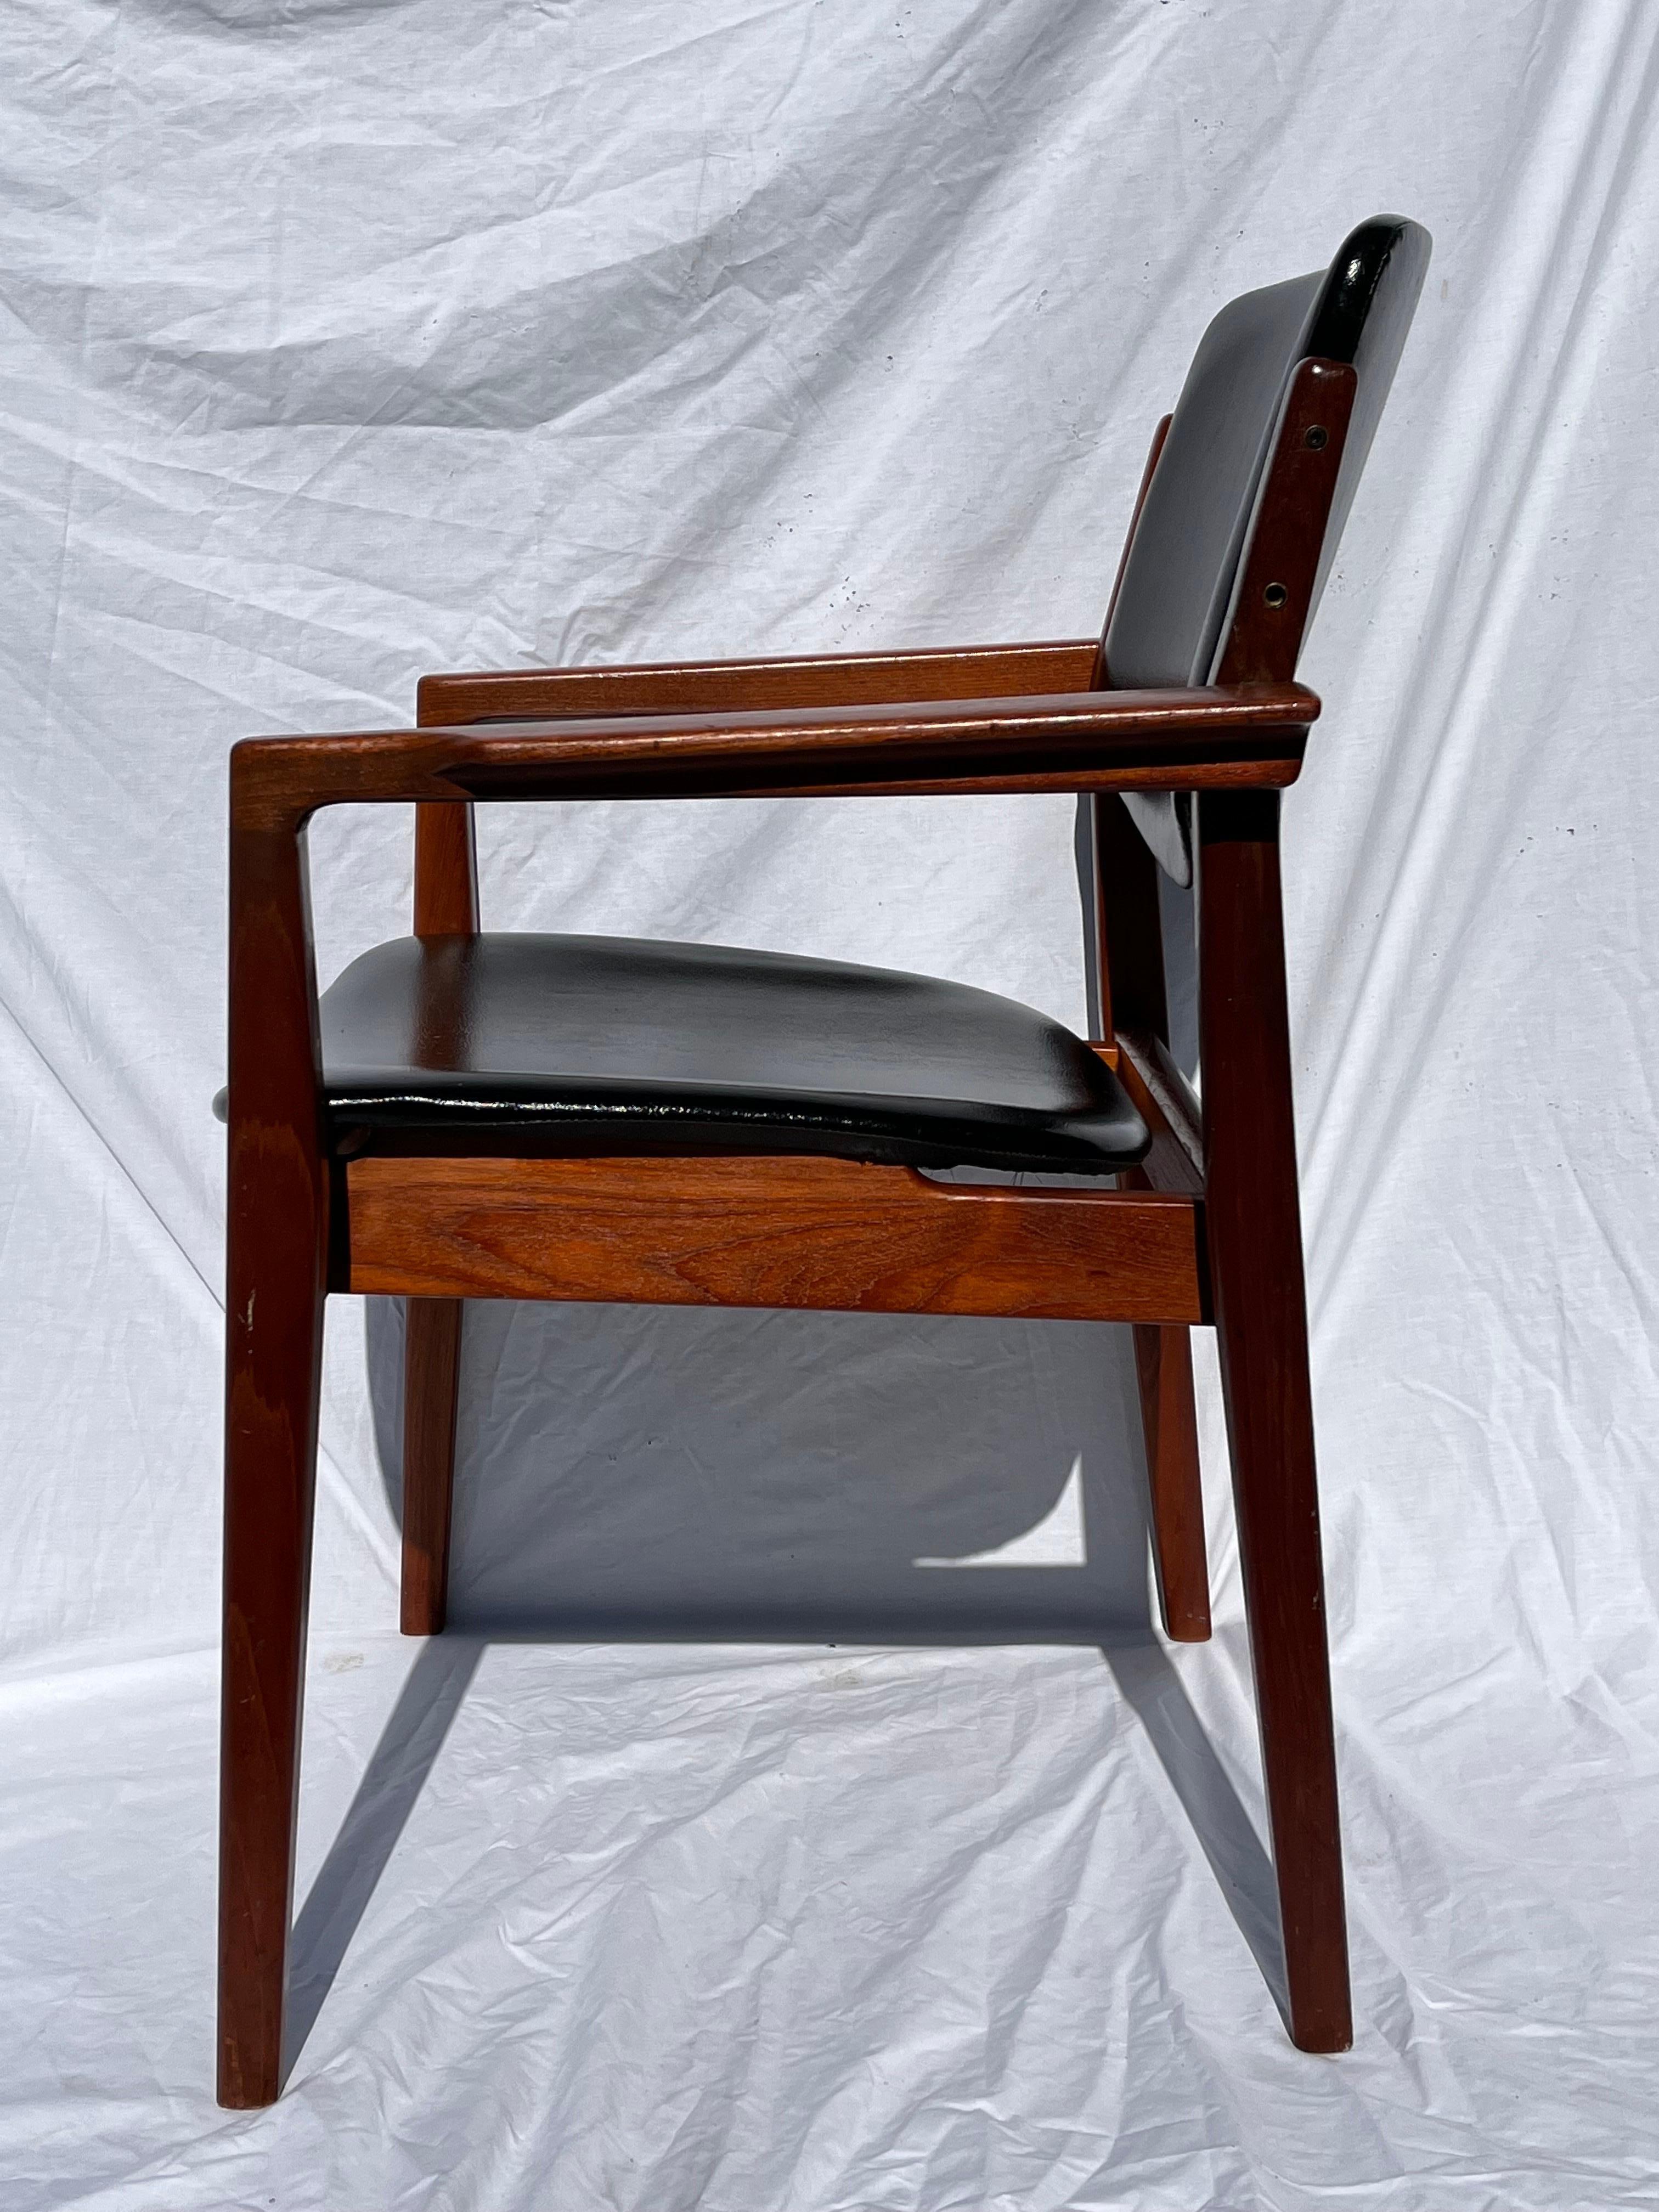 Ein dänischer Mid-Century Modern Sessel aus den 1960er Jahren, entworfen von Finn Juhl für France and Son. Dieser Sessel ist das Modell 196. Das dänische Originalunternehmen France and Son hat eine bedeutende Geschichte - seien Sie vorsichtig mit